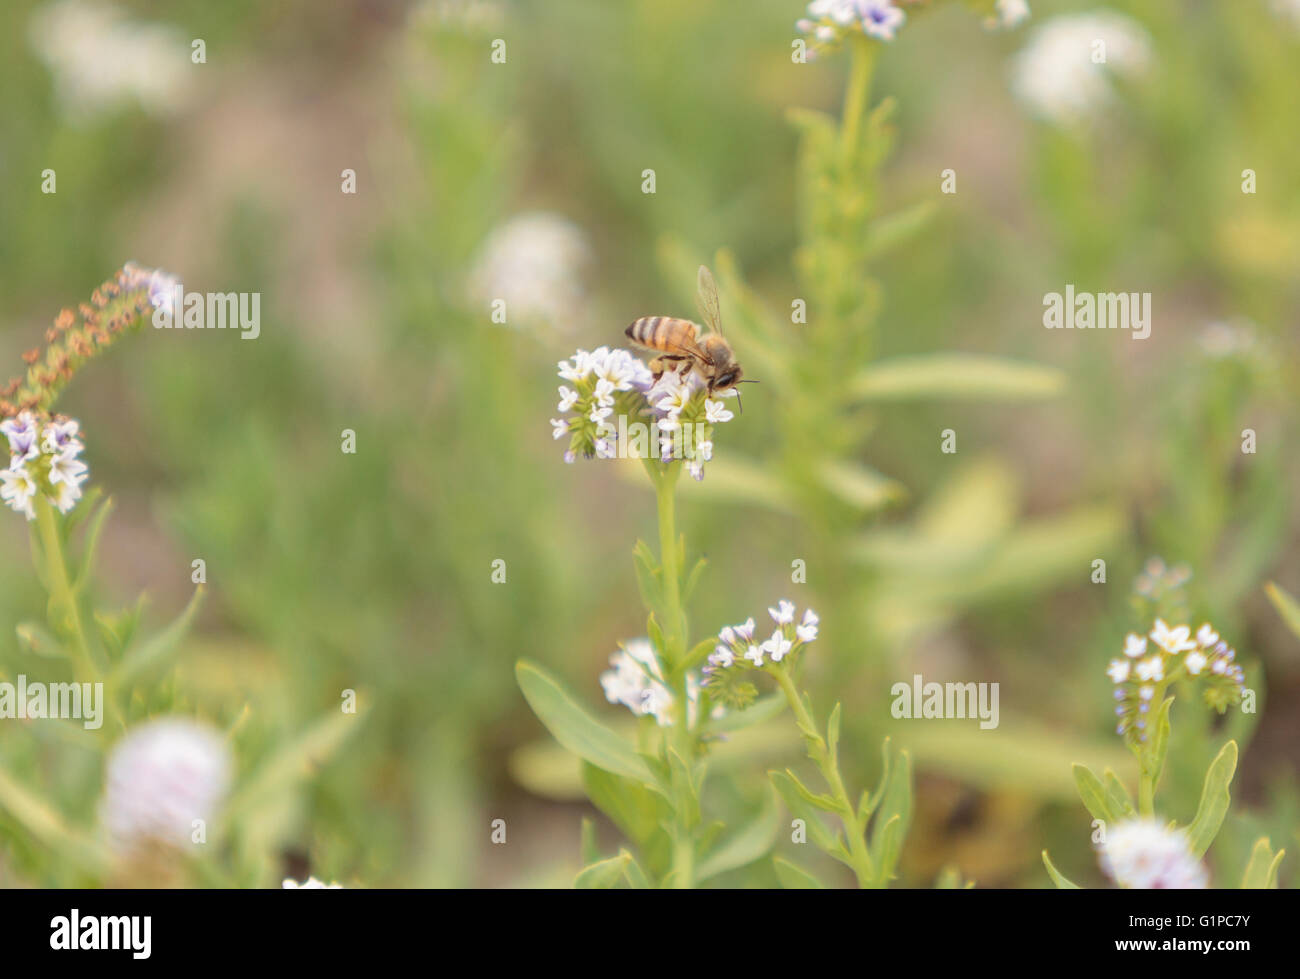 La abeja Hylaeus, recoge el polen de una flor, en el sur de California, Estados Unidos. Foto de stock